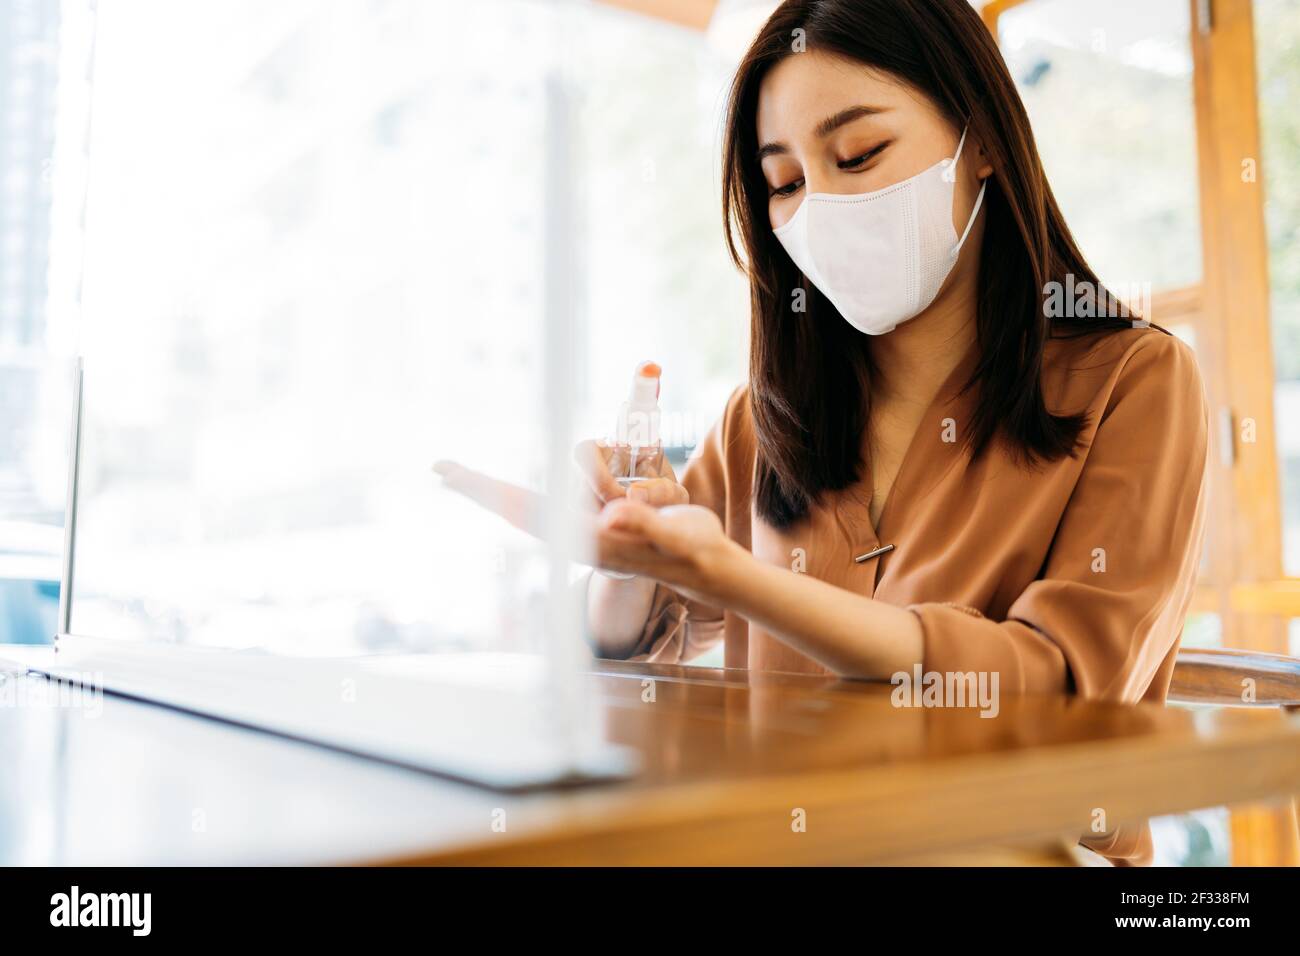 Junge schöne asiatische Frau trägt covid-19 Schutz Gesichtsmaske Anwendung Medizinisches Händedesinfektionsmittel für Sicherheit und Vorsorge gegen Coronavirus-Viren Stockfoto